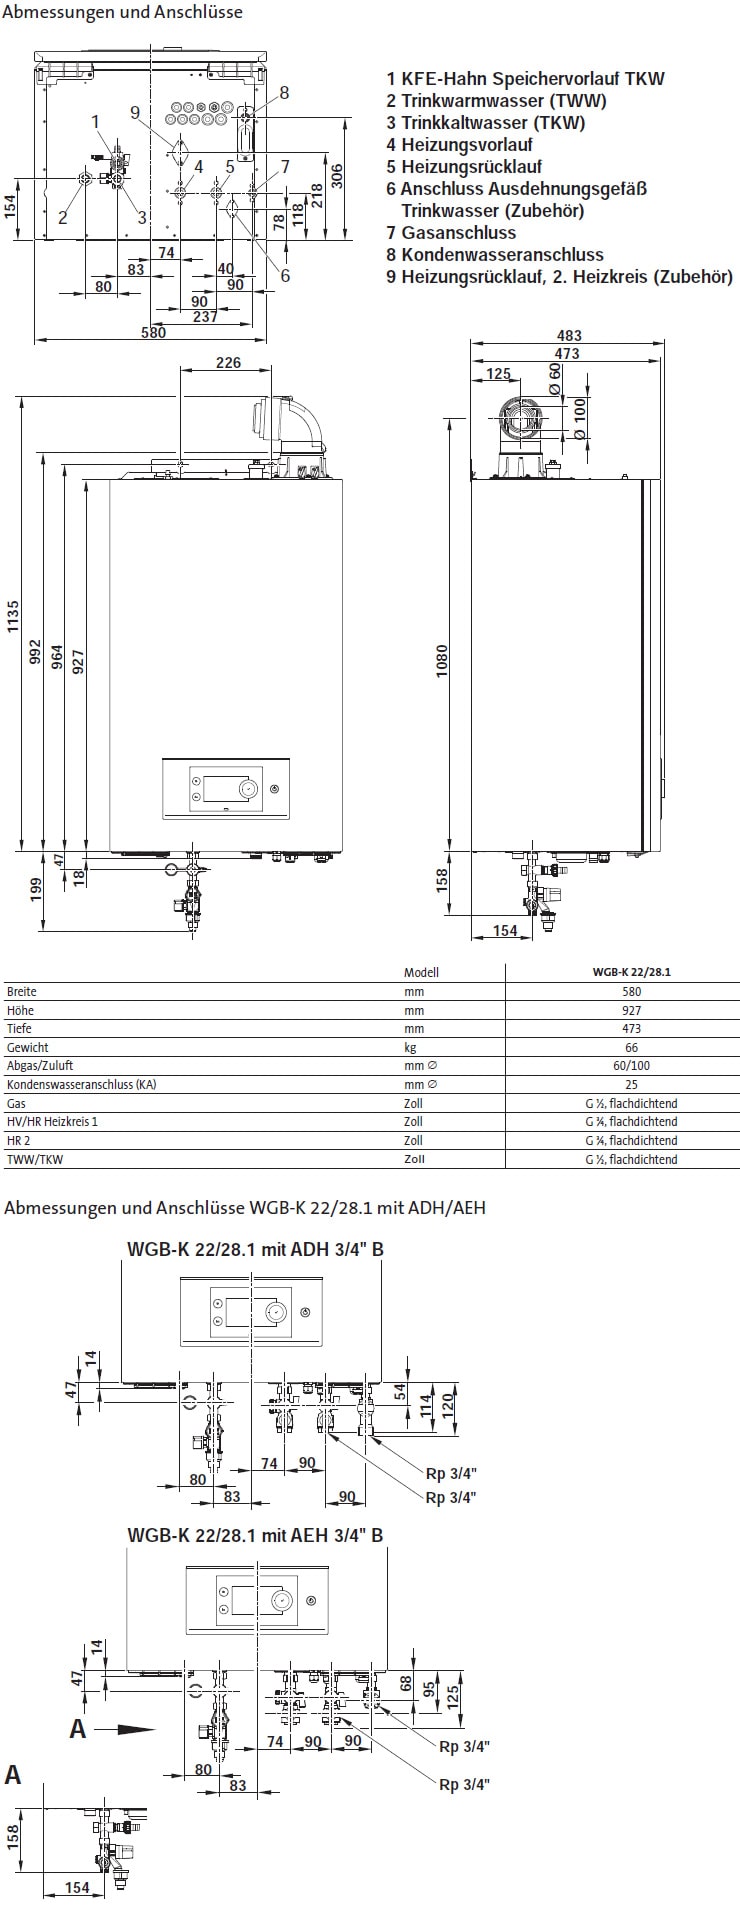 Abmessungen und Anschlüsse Gas-Brennwertwandkessel WGB-K 22/28.1